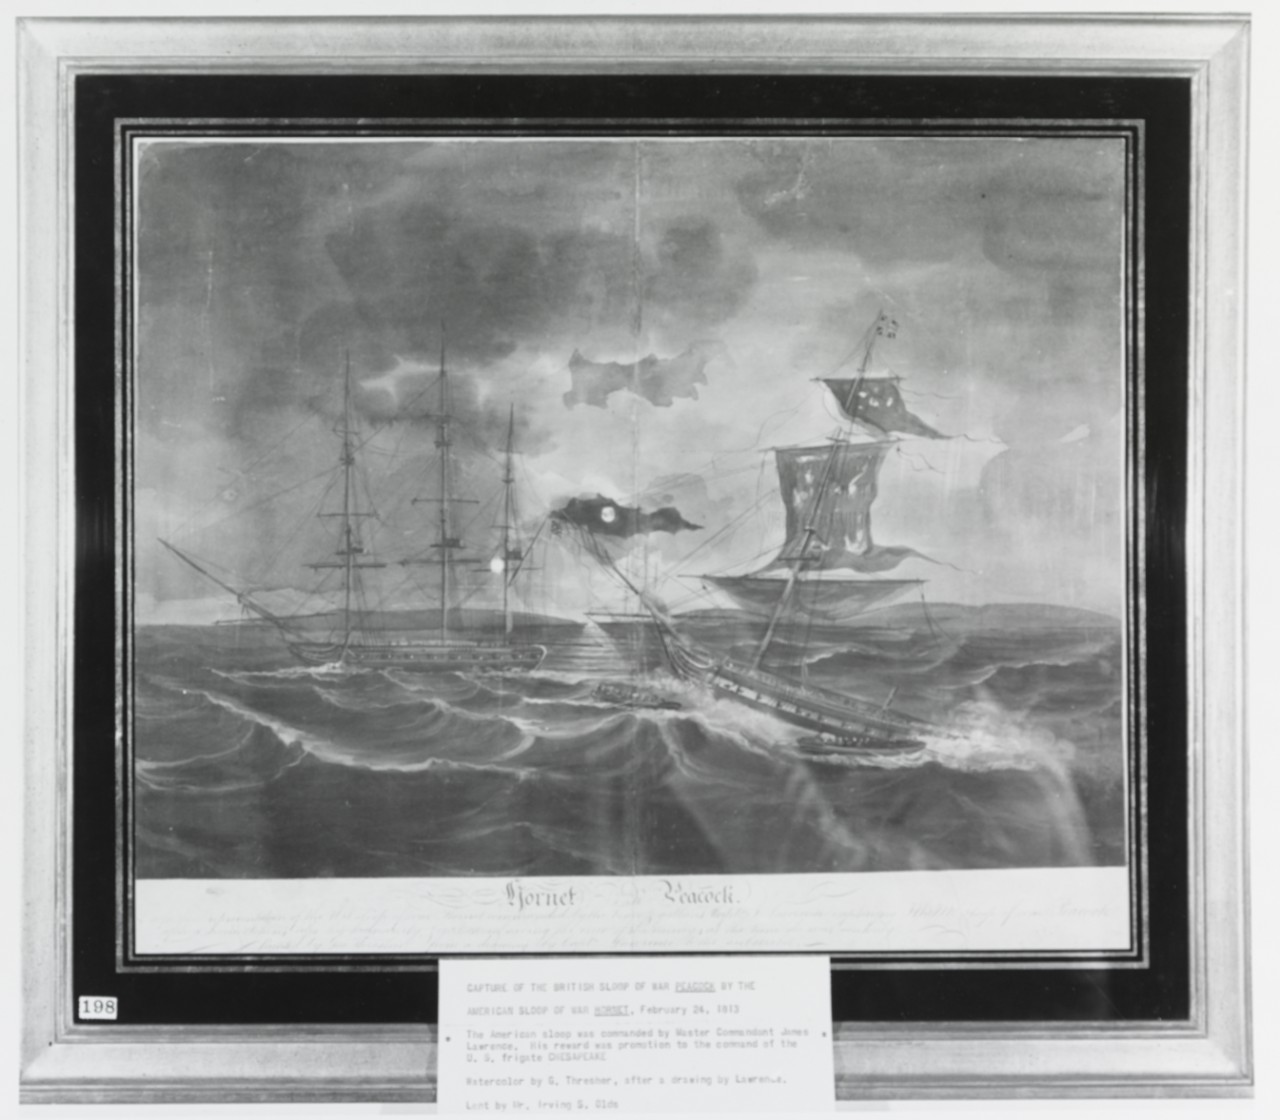 HMS PEACOCK vs USS HORNET, 24 February 1813